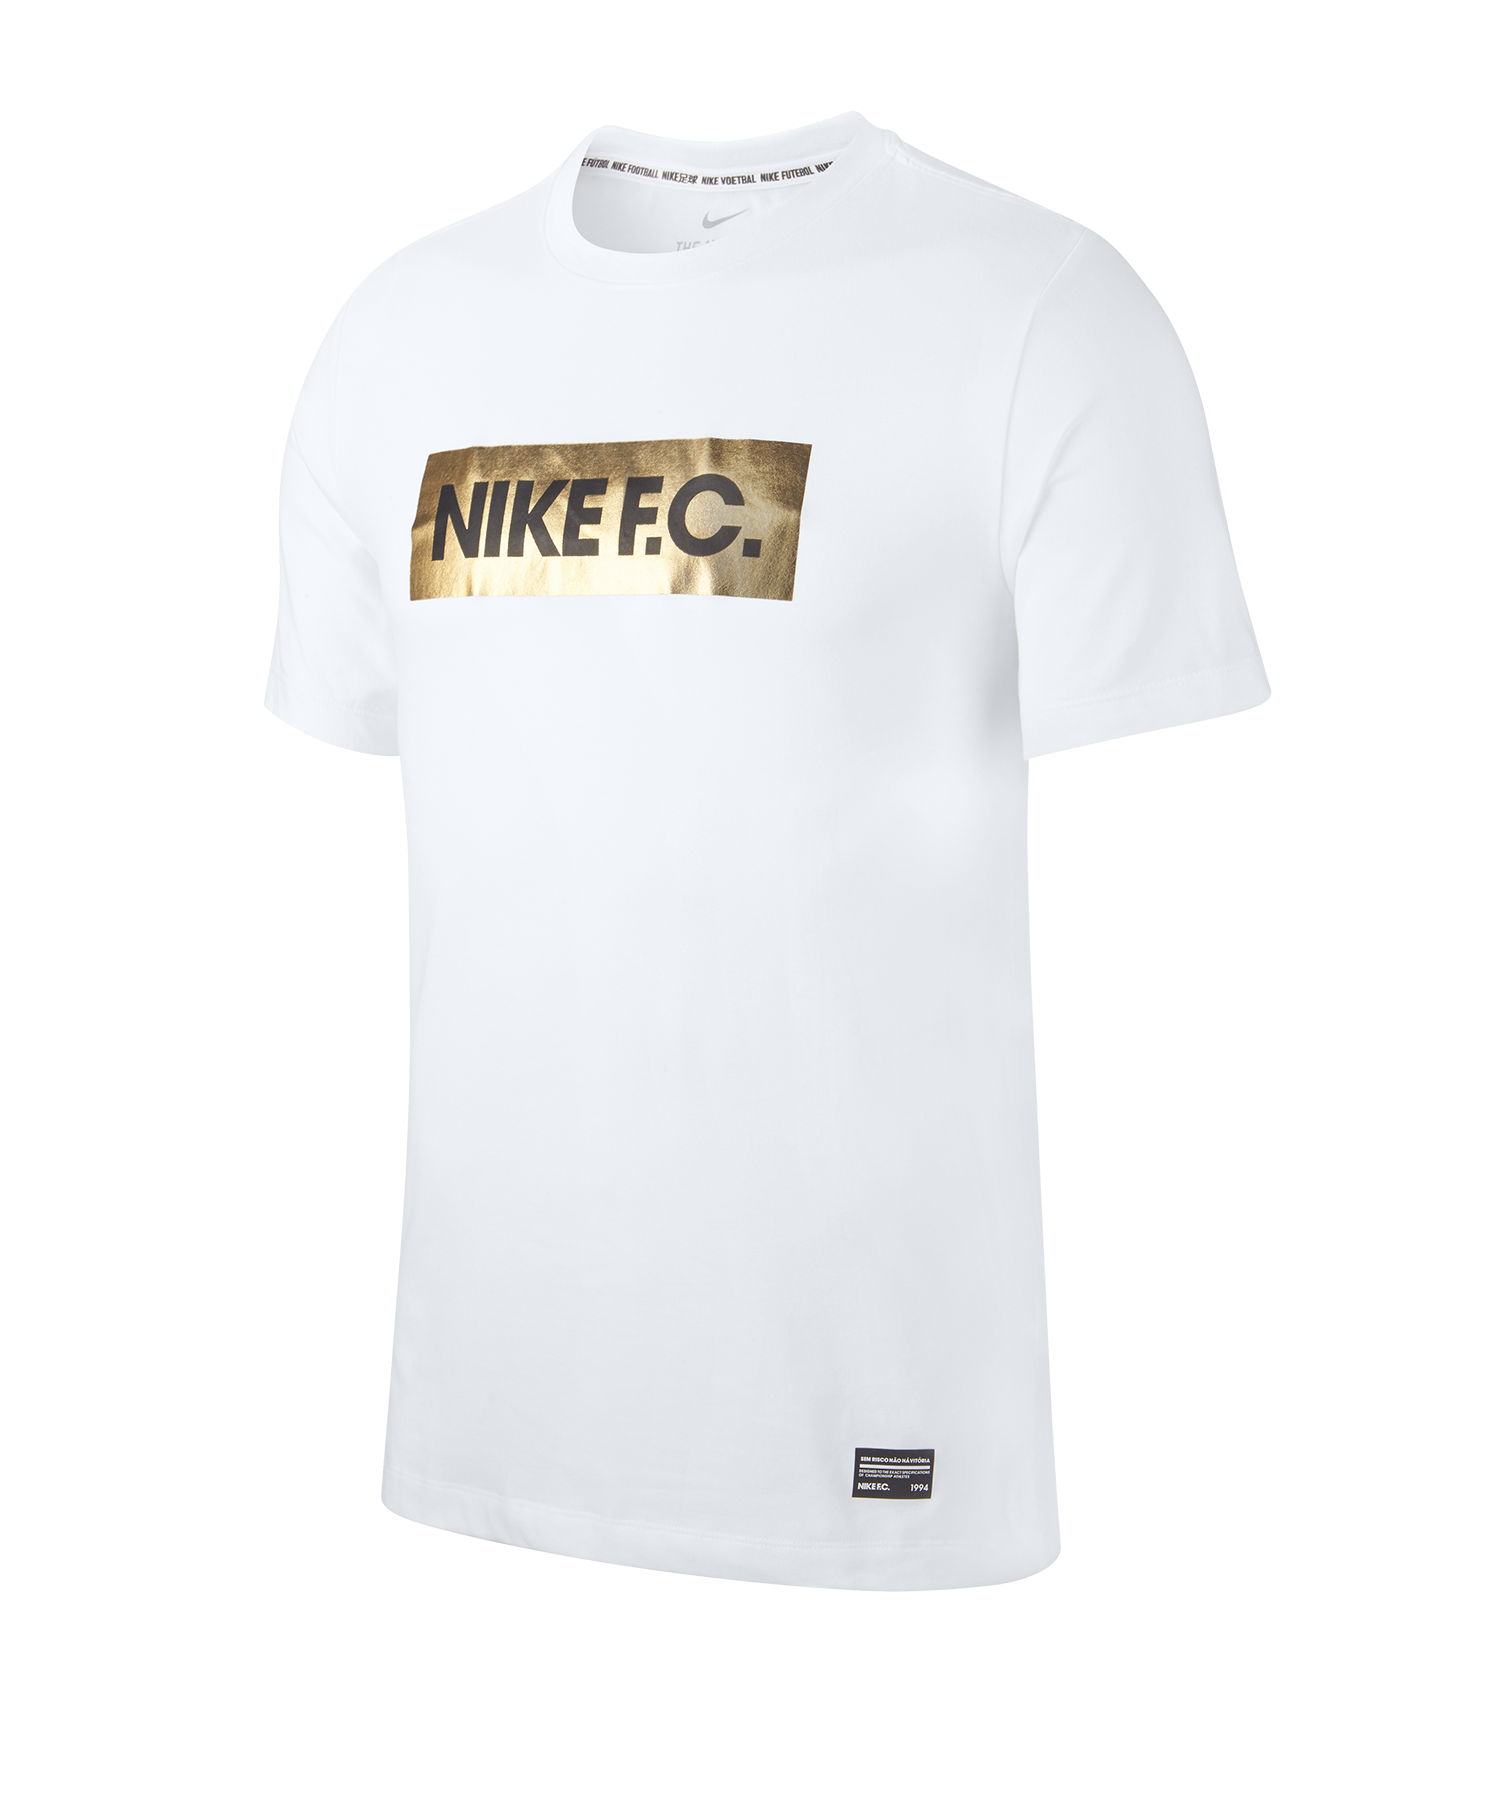 huiswerk maken Miles eend Nike F.C. Block Tee T-Shirt - White